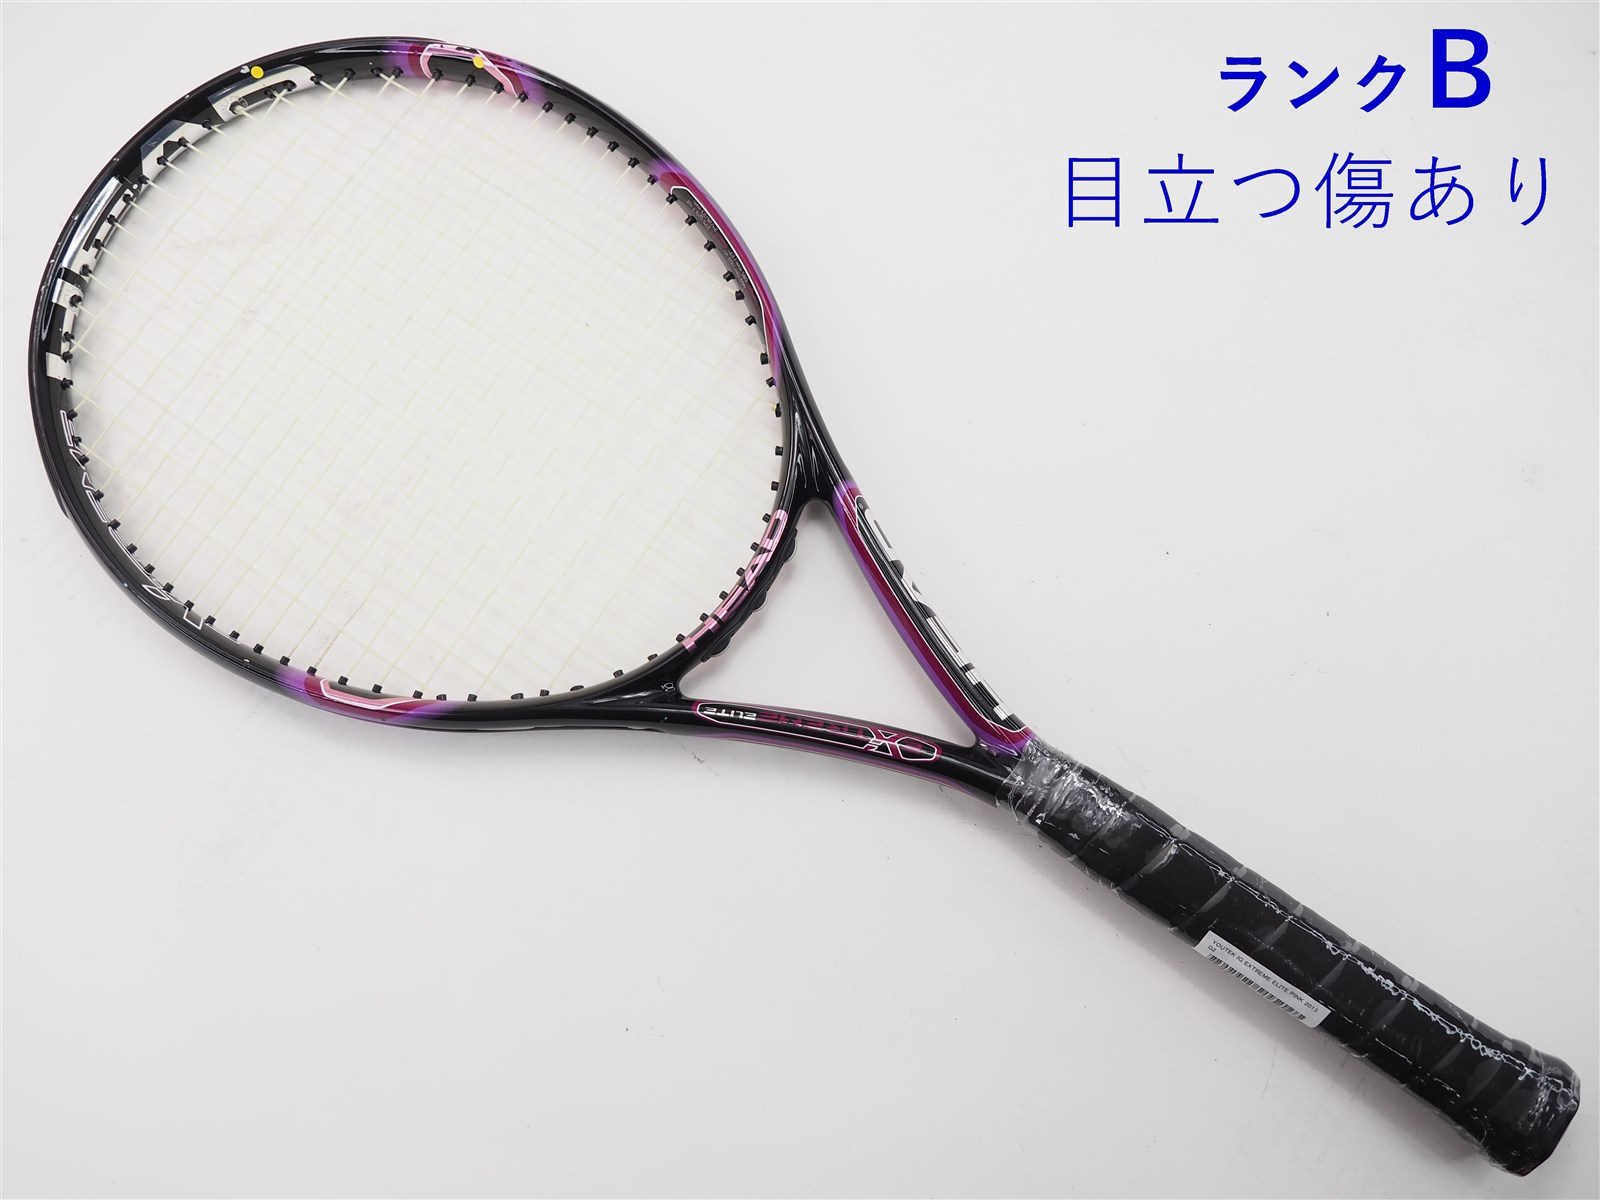 テニスラケット ヘッド ユーテック IG スピード MP 300 2011年モデル (G2)HEAD YOUTEK IG SPEED MP 300 2011100平方インチ長さ